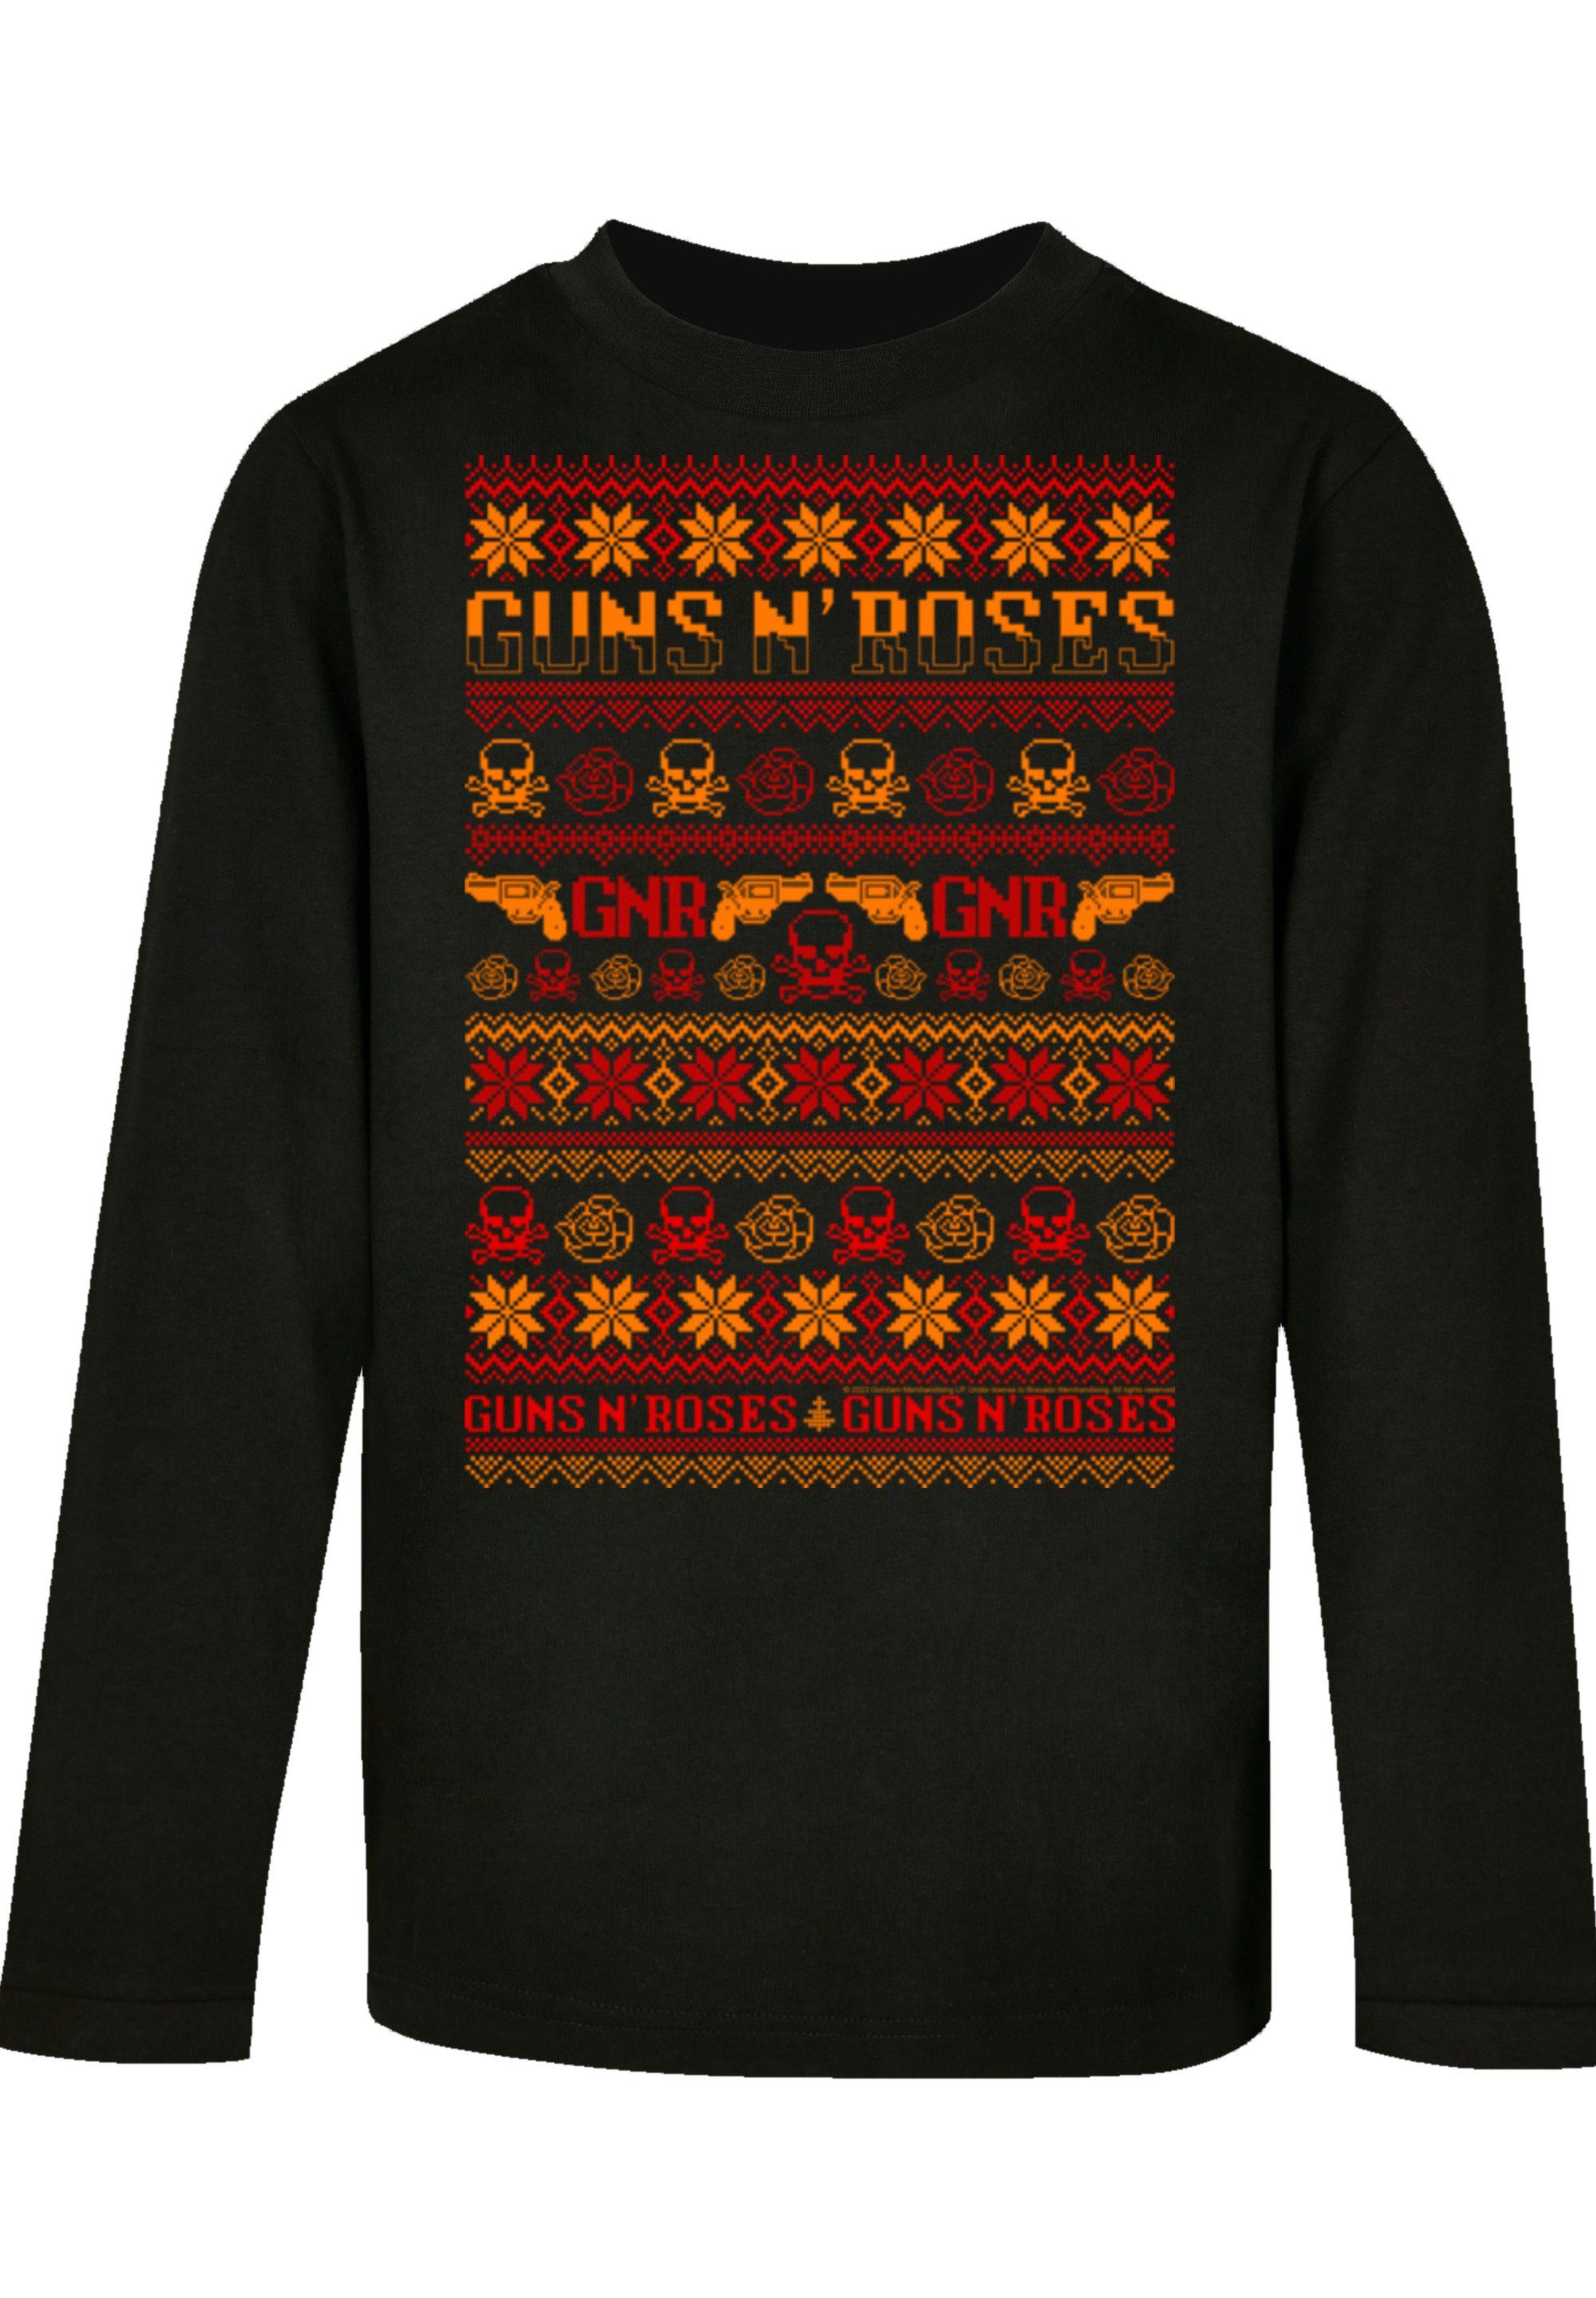 T-Shirt Roses F4NT4STIC schwarz Musik,Band,Logo Guns Christmas Weihnachten n'